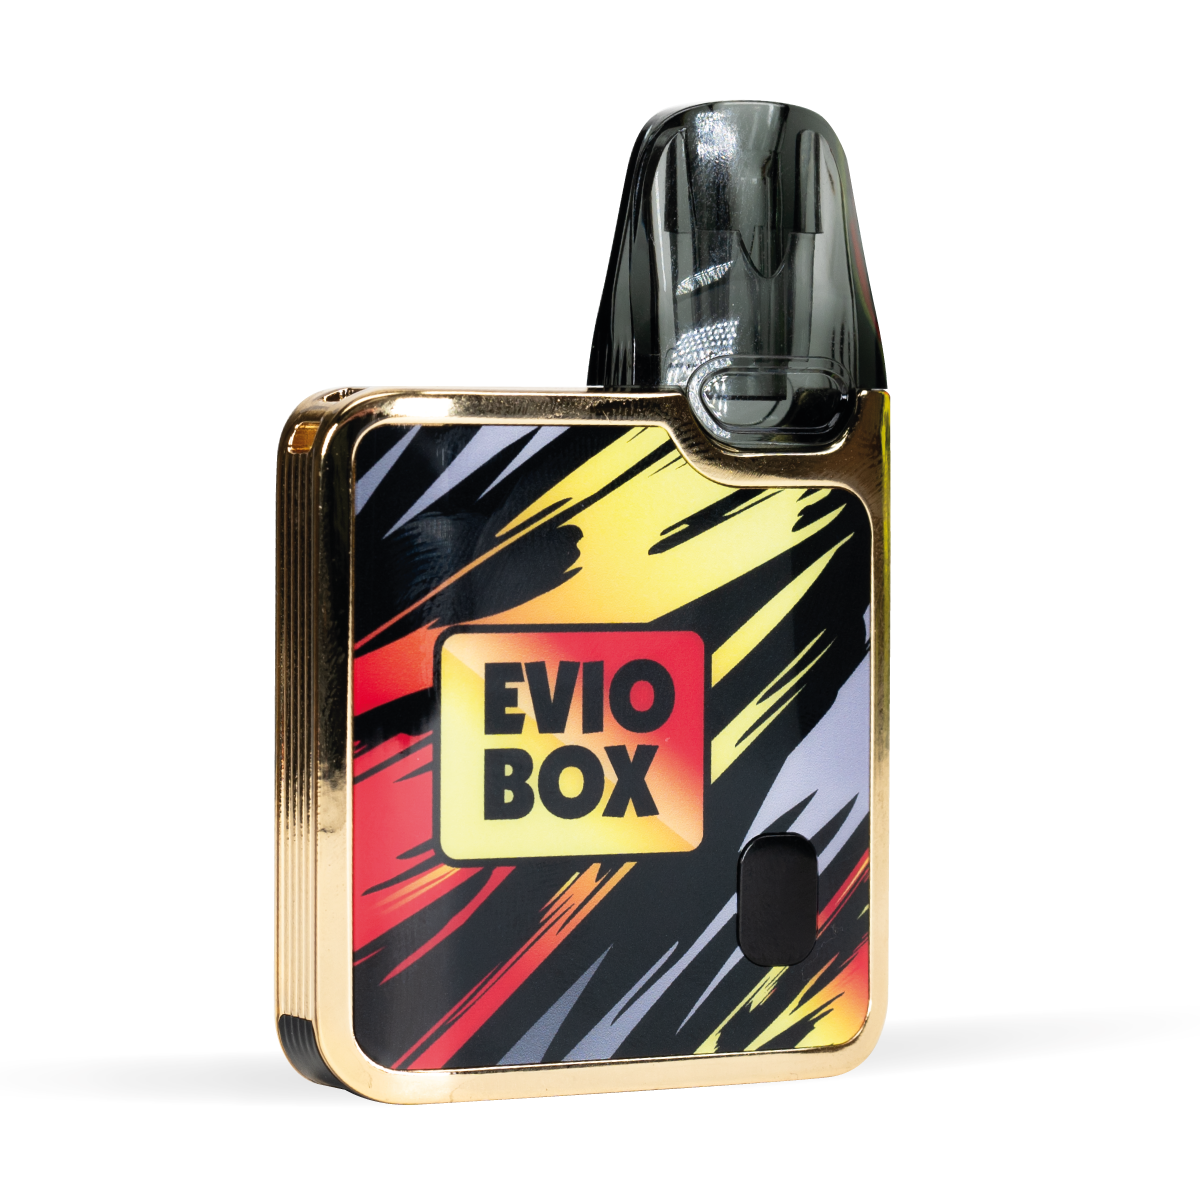 EVIO Box Pod Device Golden Flame White Background Studio Shot